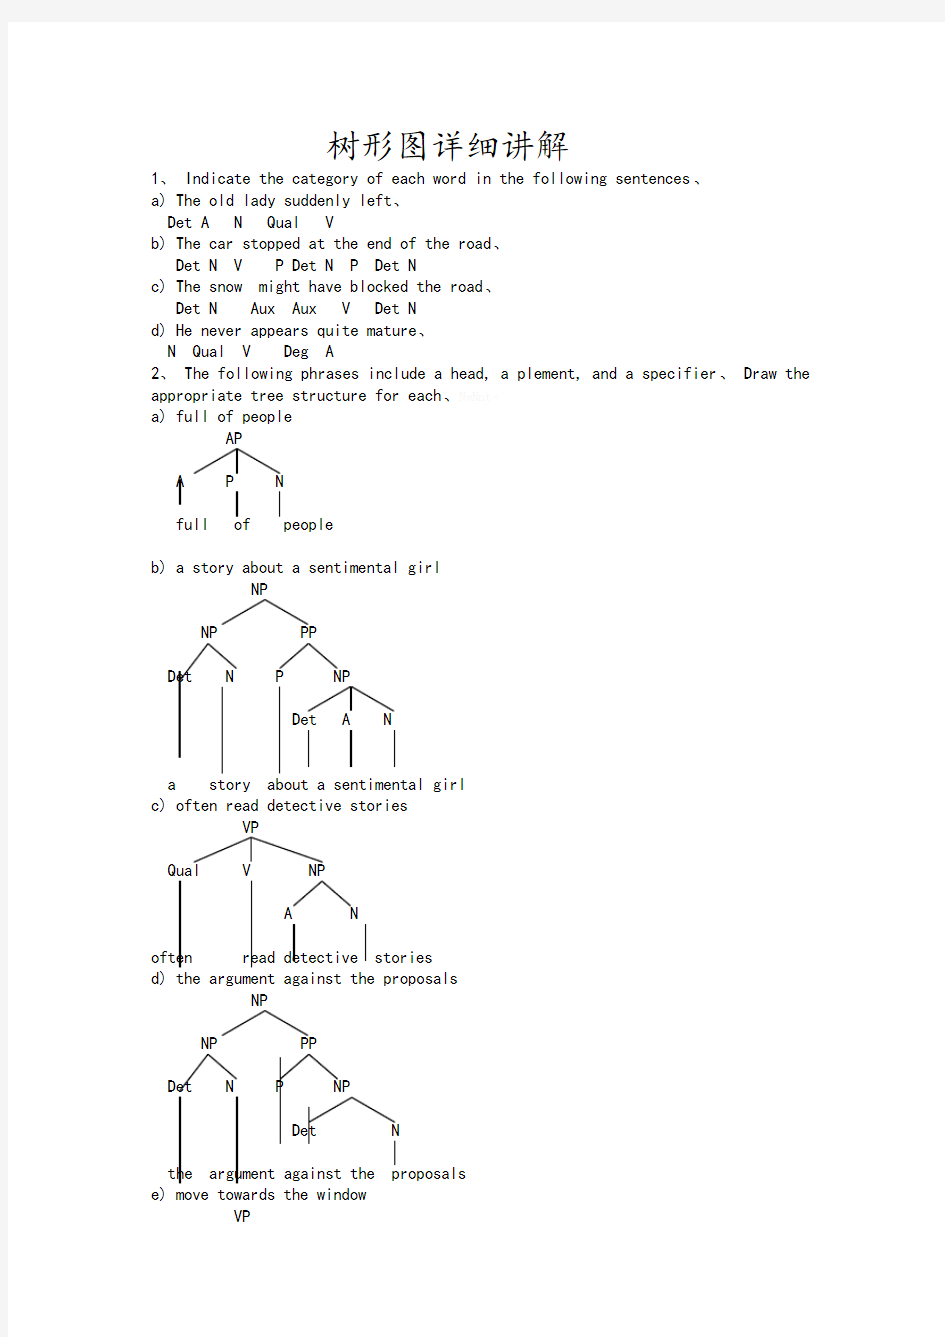 教你如何画语言学树型图